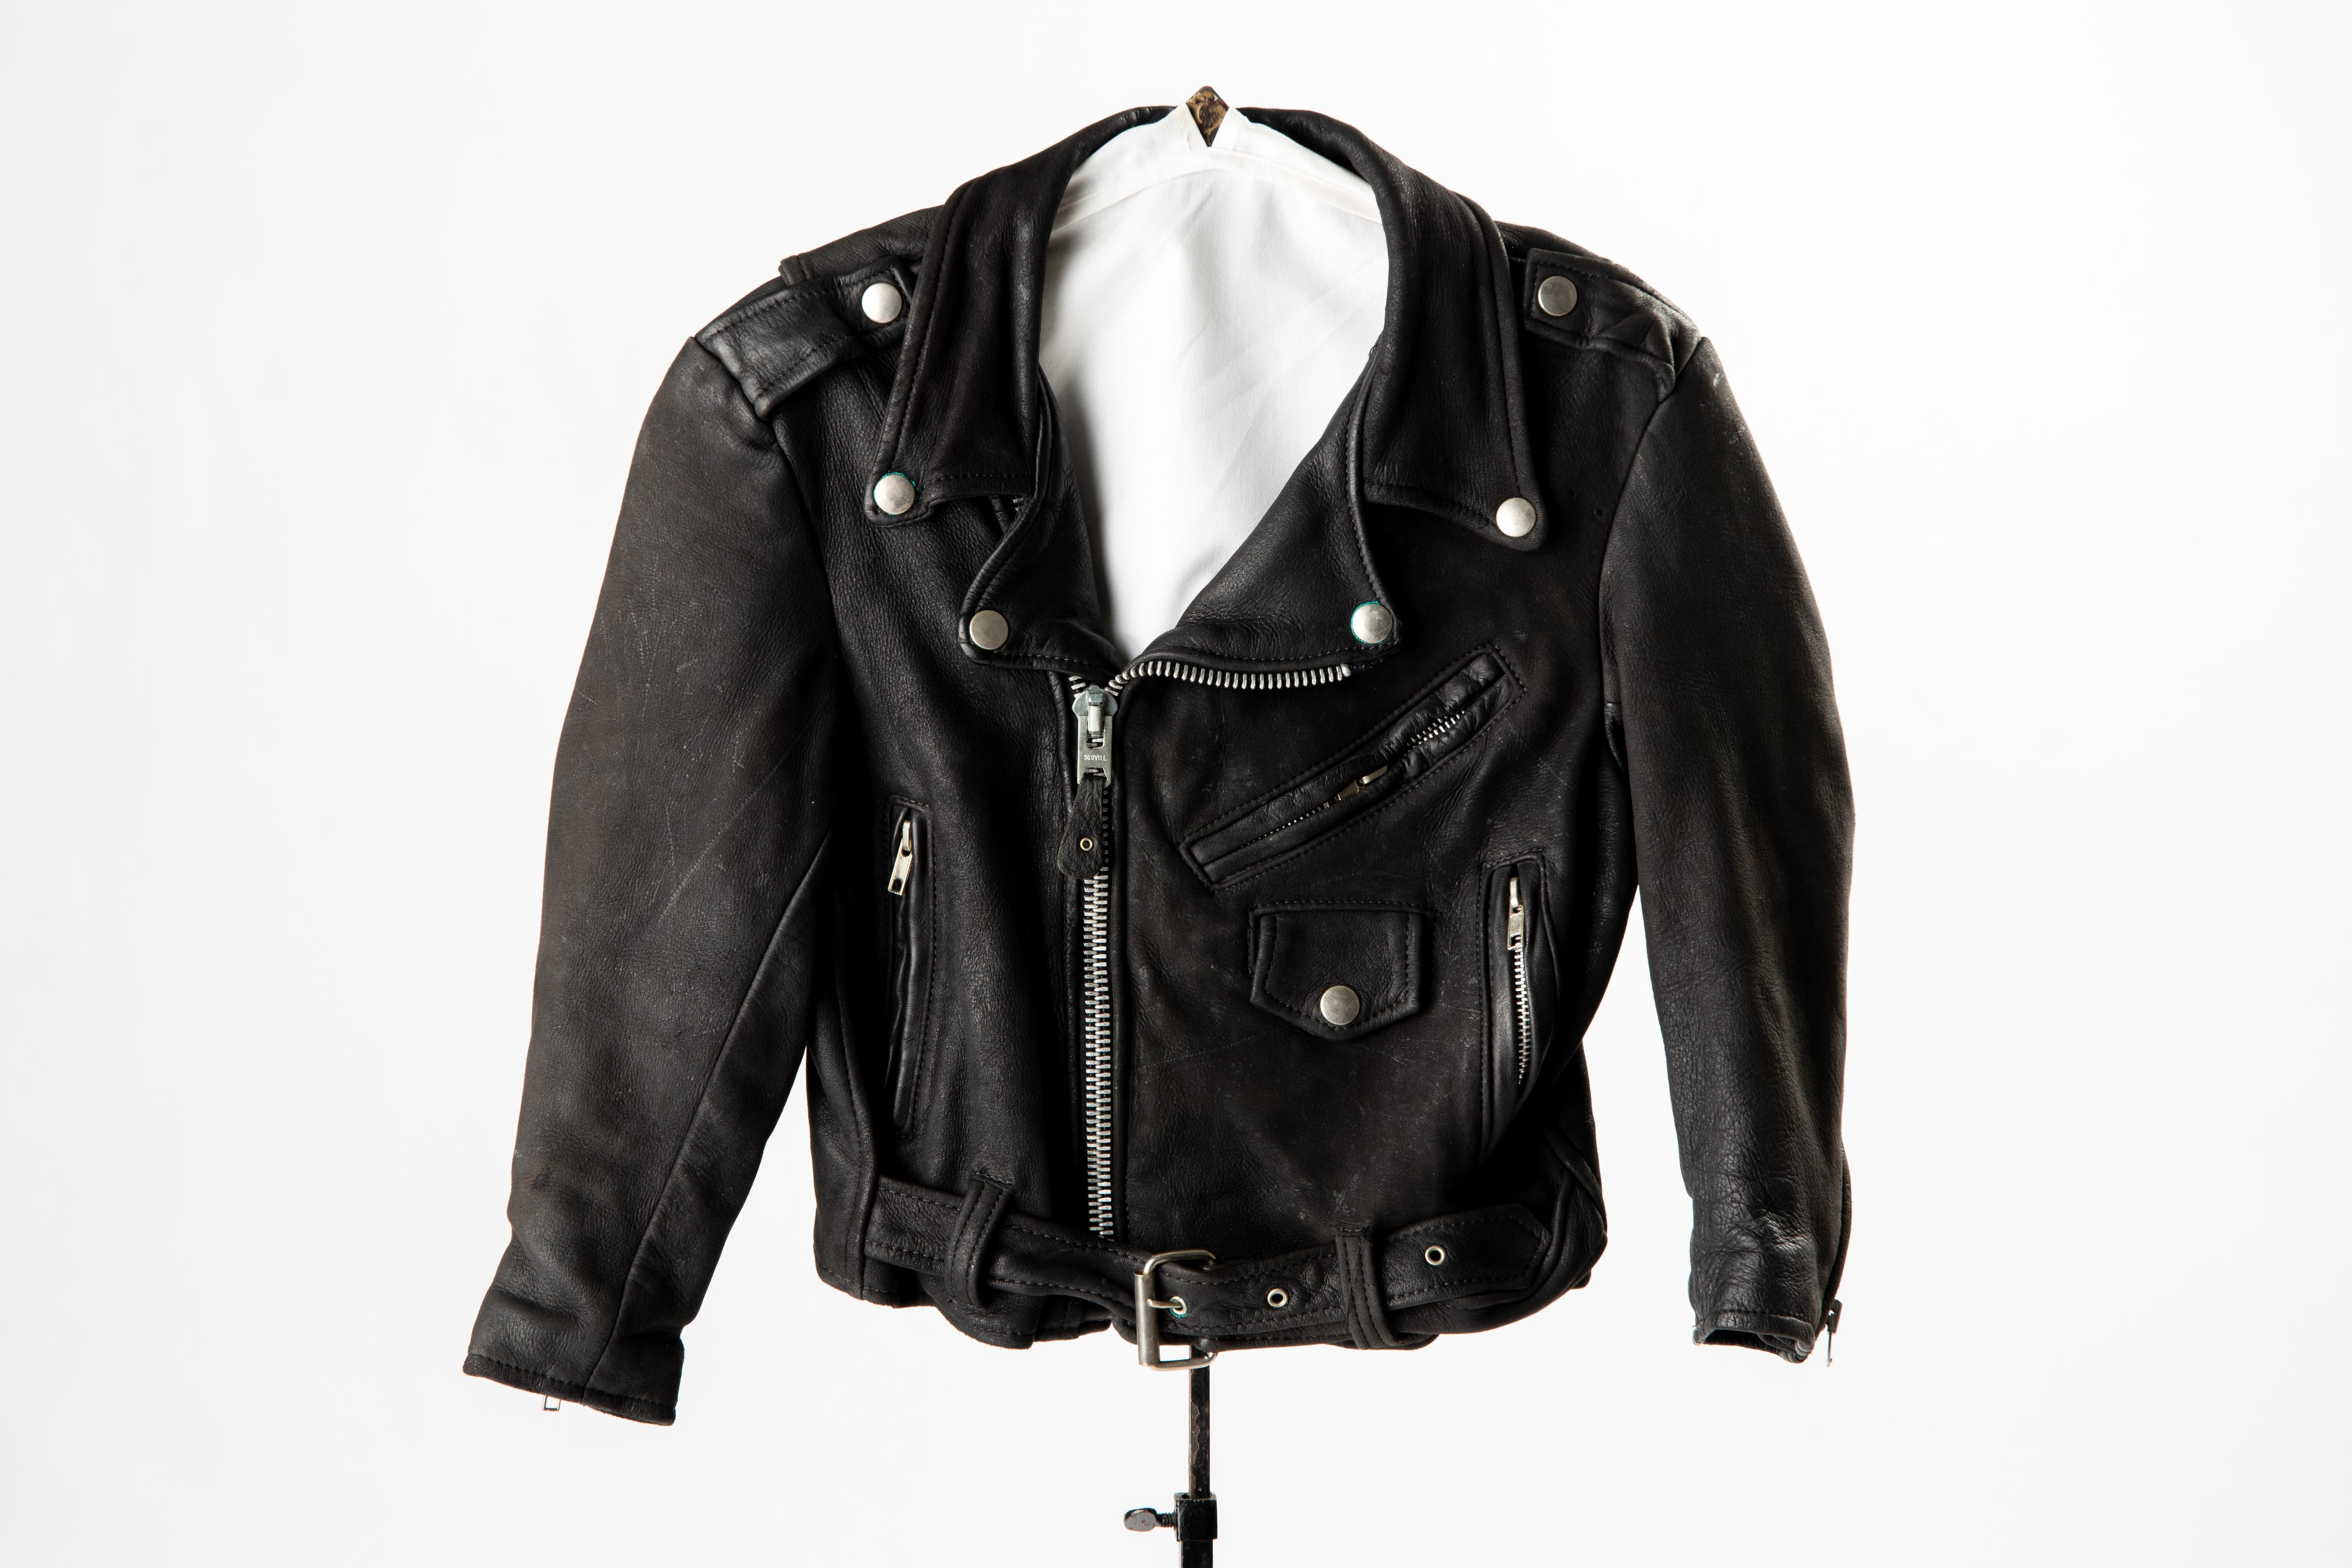 Veste de moto vintage en cuir noir pour enfant, taille 8. 
Les détails authentiques sont la fermeture à glissière sur le devant, les poignets et les poches latérales zippés, le col et la poche avant à boutons-pression en métal. La ceinture en cuir à